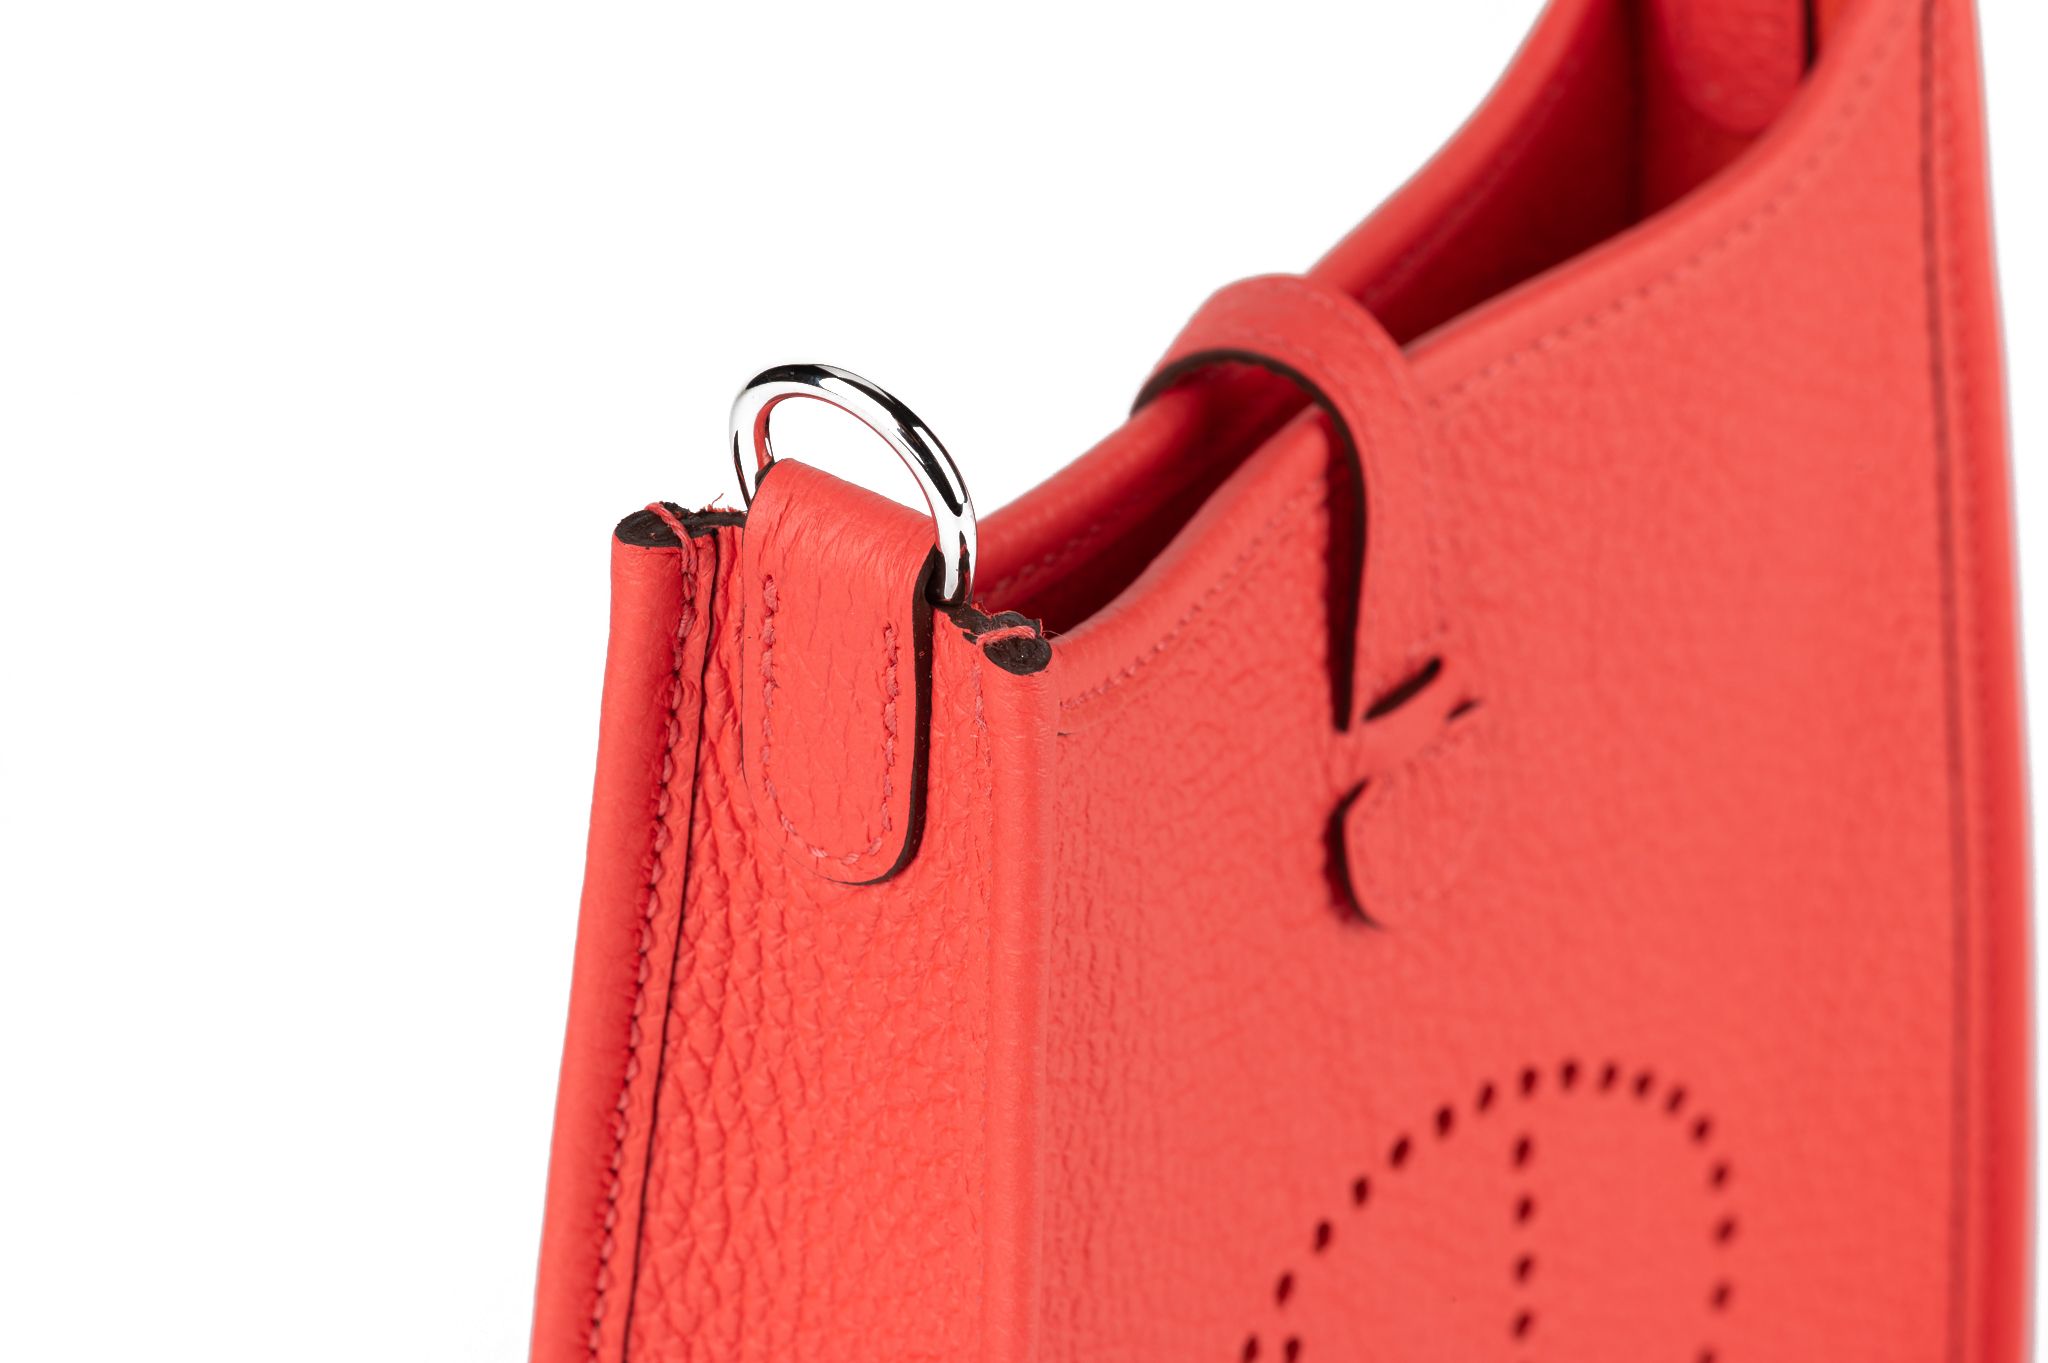 Hermes Rose Jaipur Clemence Leather Evelyne TPM Bag